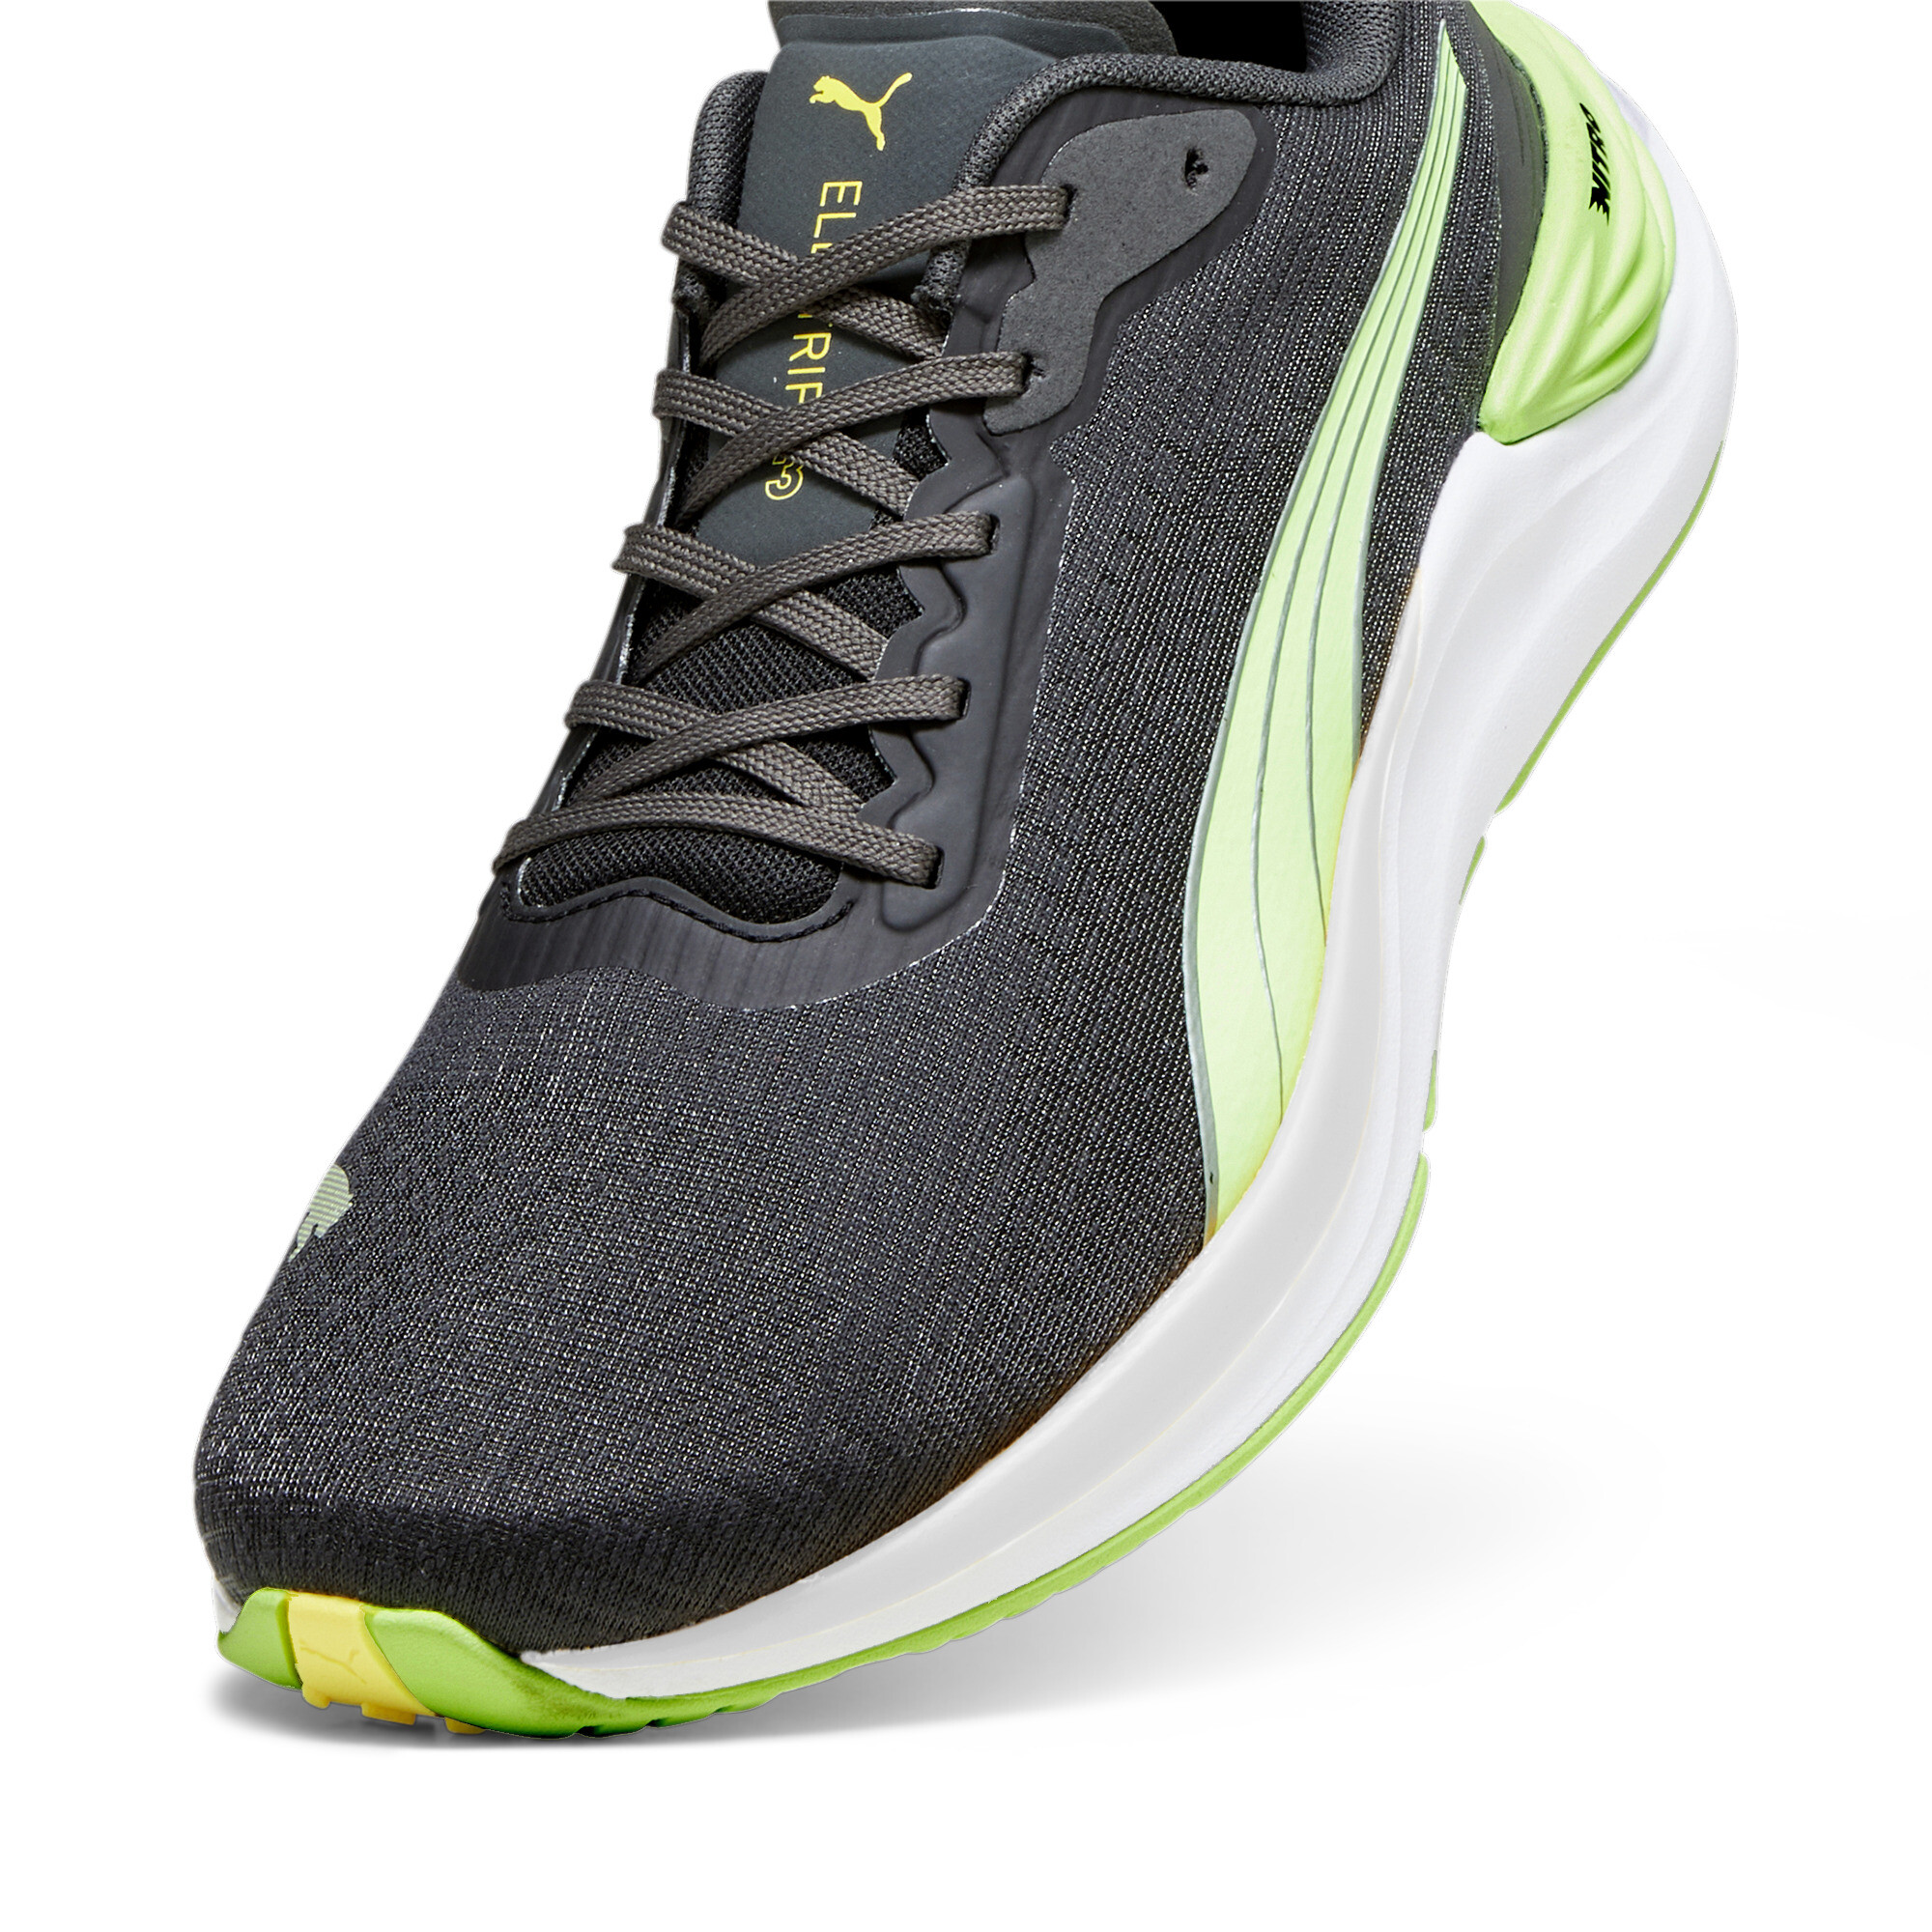 Men's PUMA Electrify NITROâ¢ 3 Running Shoes In Black, Size EU 48.5